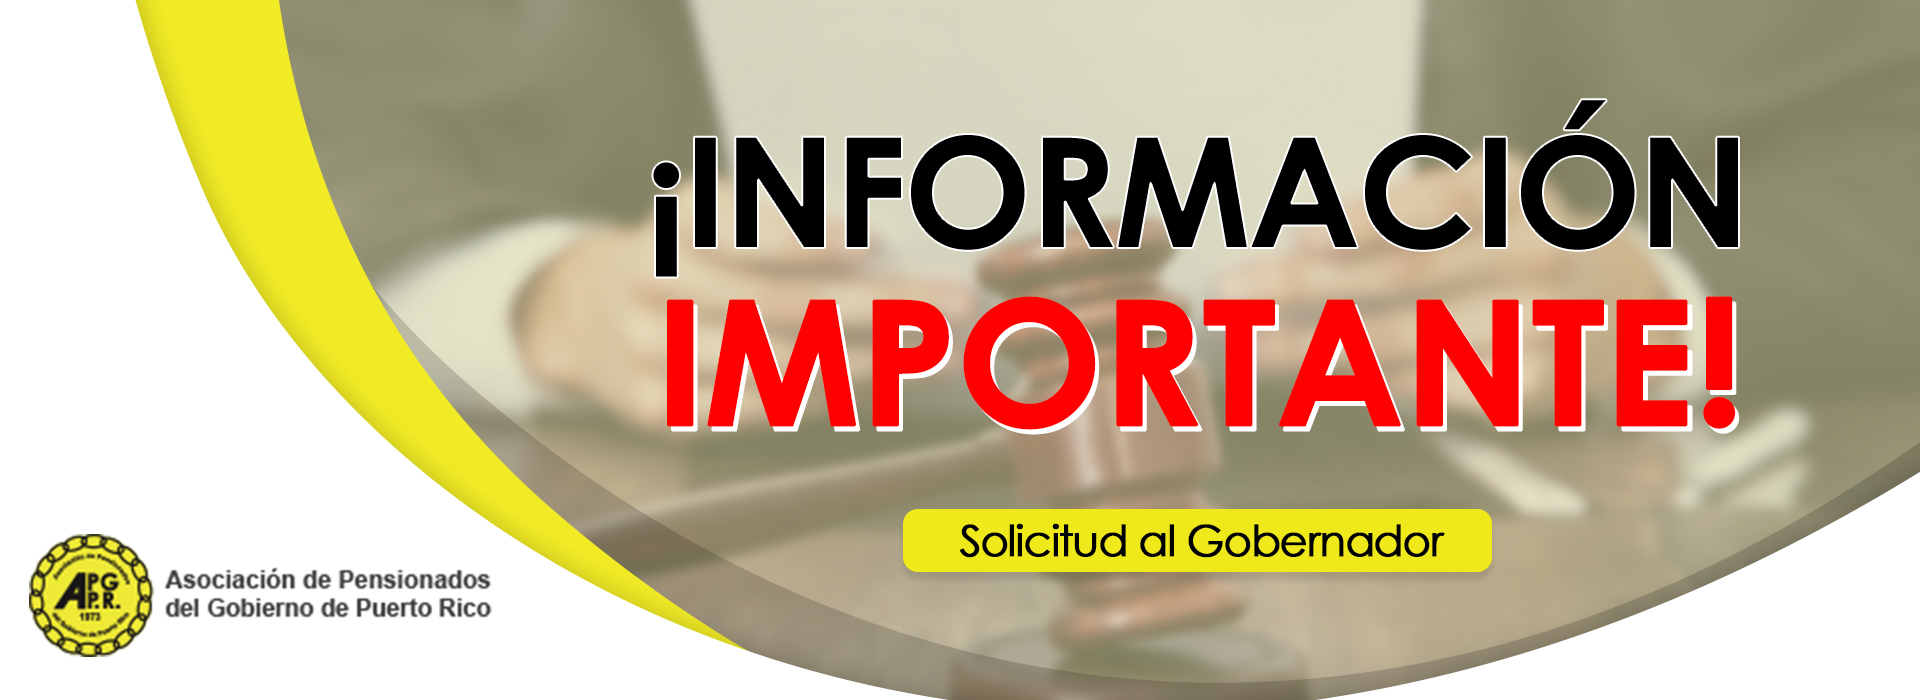 Informacion_Importante_nuevo1